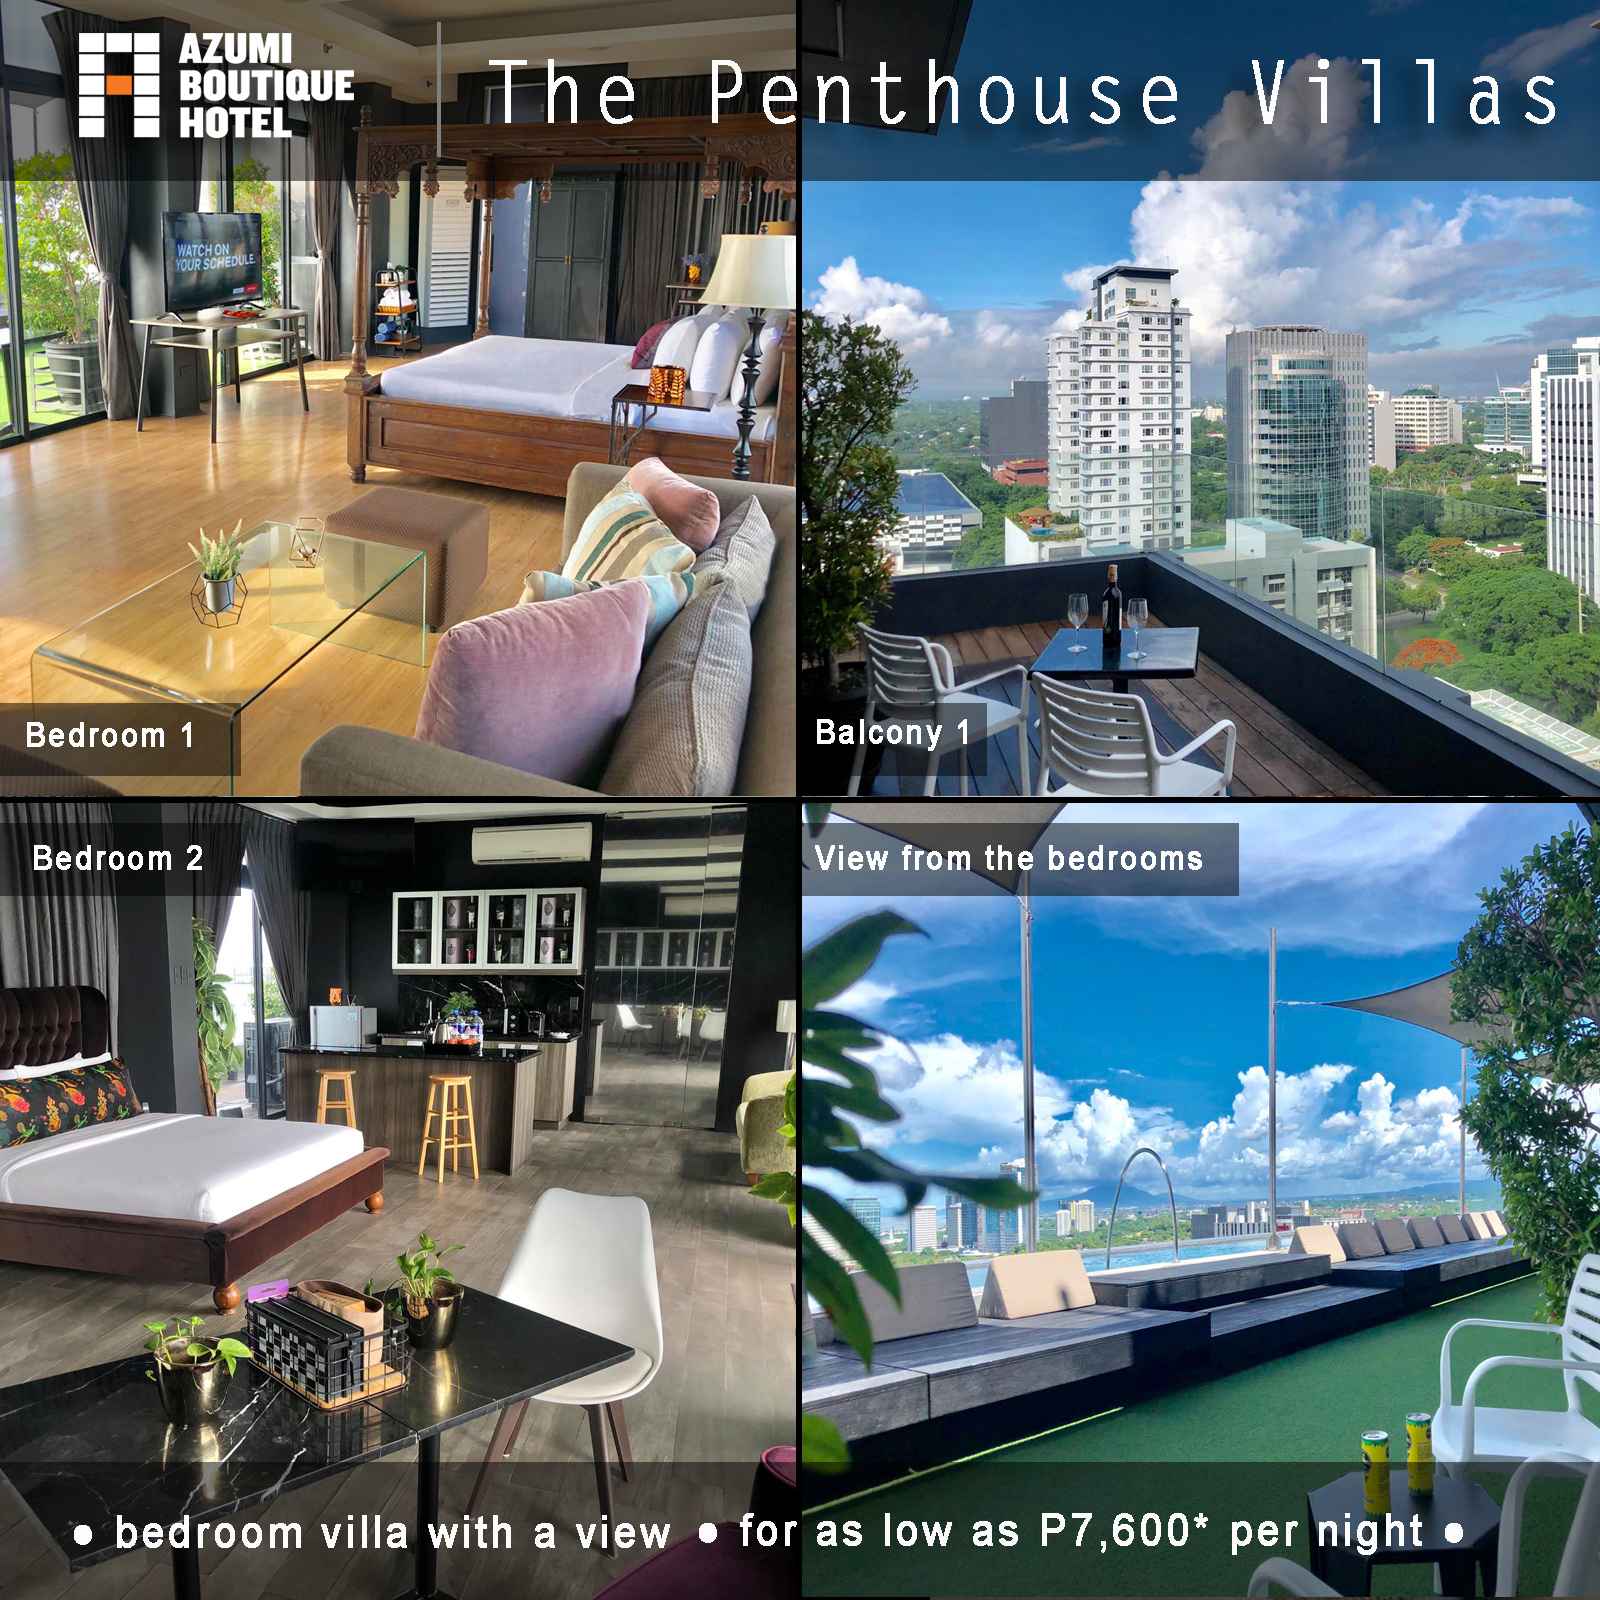 The Penthouse Villas